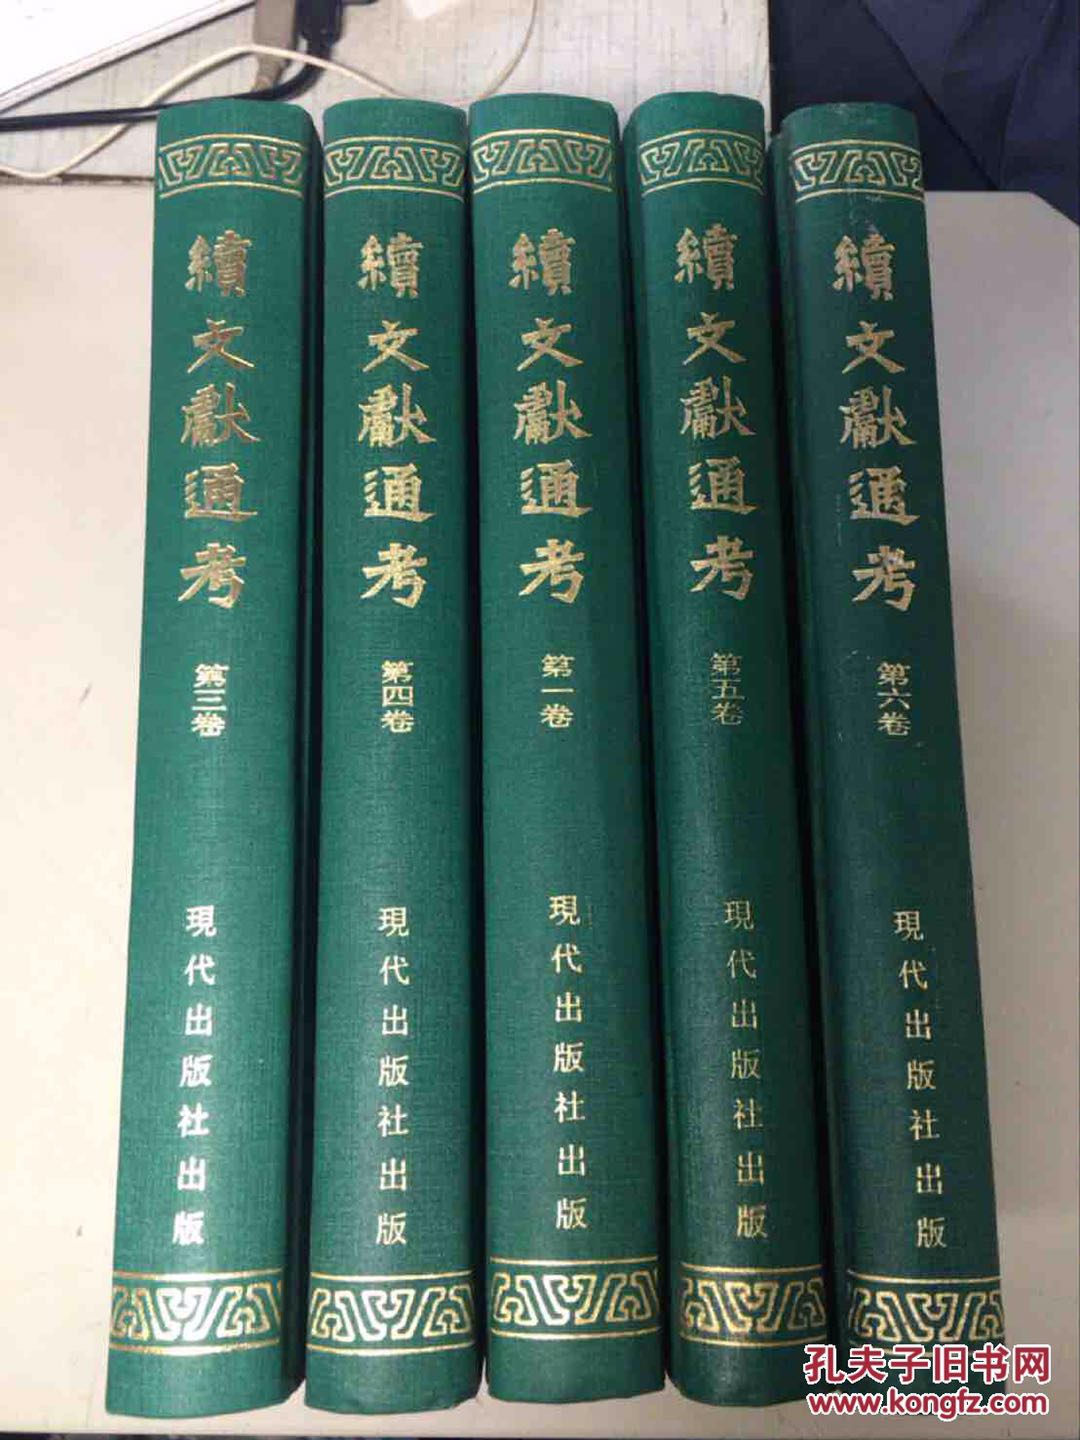 北京 广安门外 旧书 二手书 闲置书 废纸收购旧书二手书